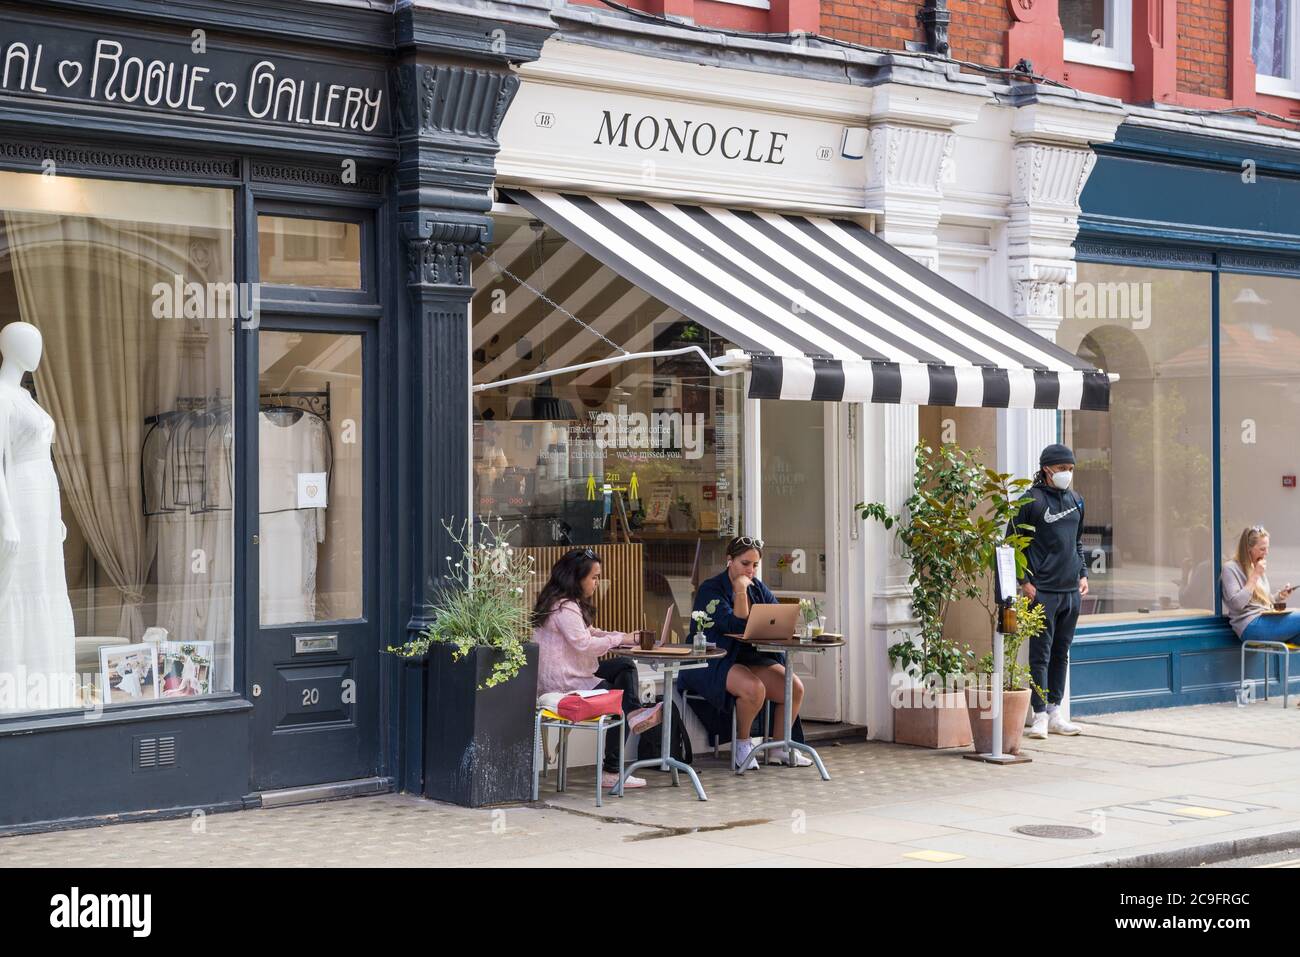 Zwei junge Frauen saßen vor dem Monocle Cafe an Tischen, wo sie sich erfrischen und Laptops benutzten. Chiltern Street, Marylebone, London Stockfoto